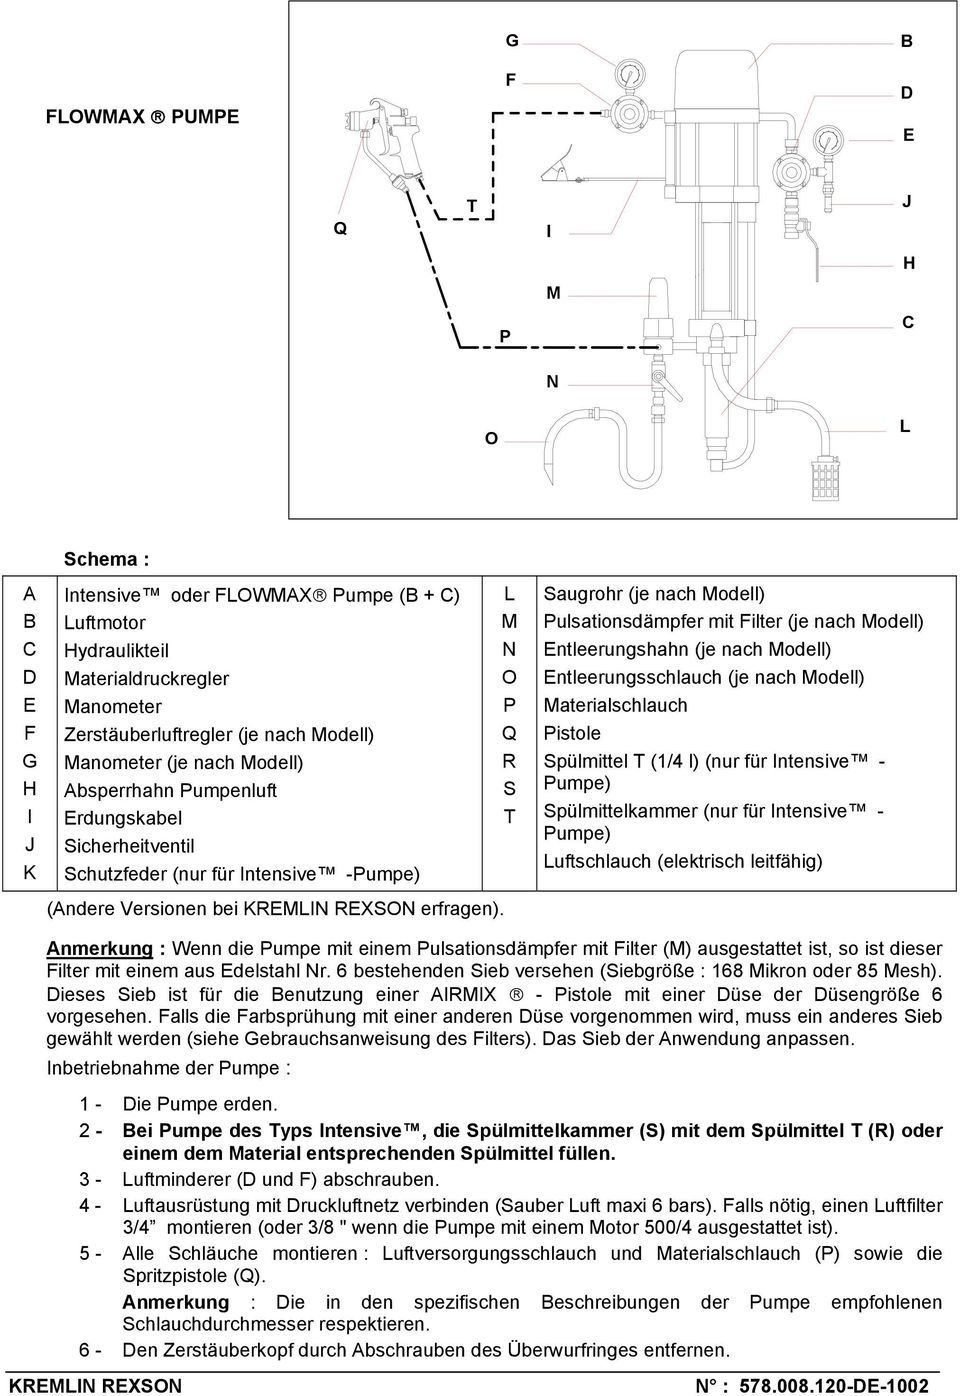 aterialschlauch istole Spülmittel (1/4 l) (nur für ntensive - umpe) Spülmittelkammer (nur für ntensive - umpe) uftschlauch (elektrisch leitfähig) (Andere Versionen bei erfragen).